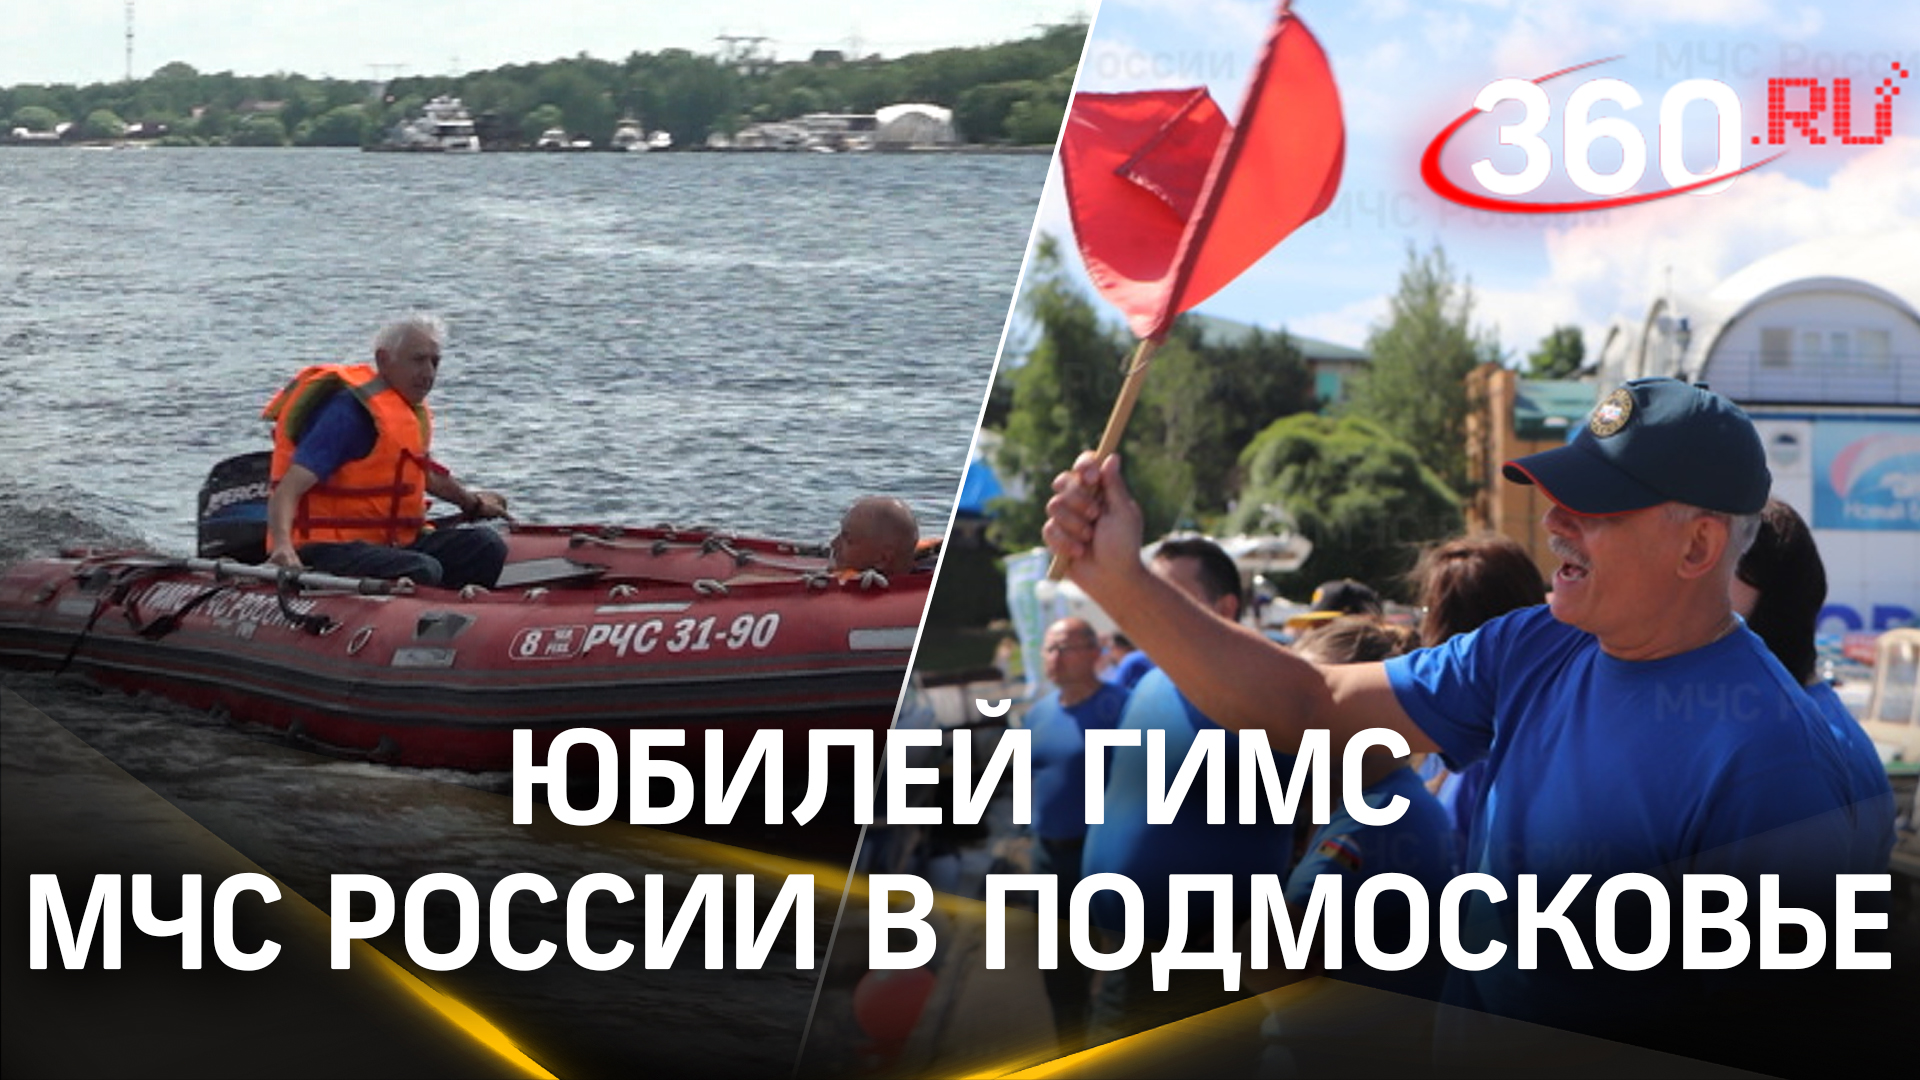 Безопасность на воде и на пляже: ГИМС МЧС России отметила 40-летие в Подмосковье